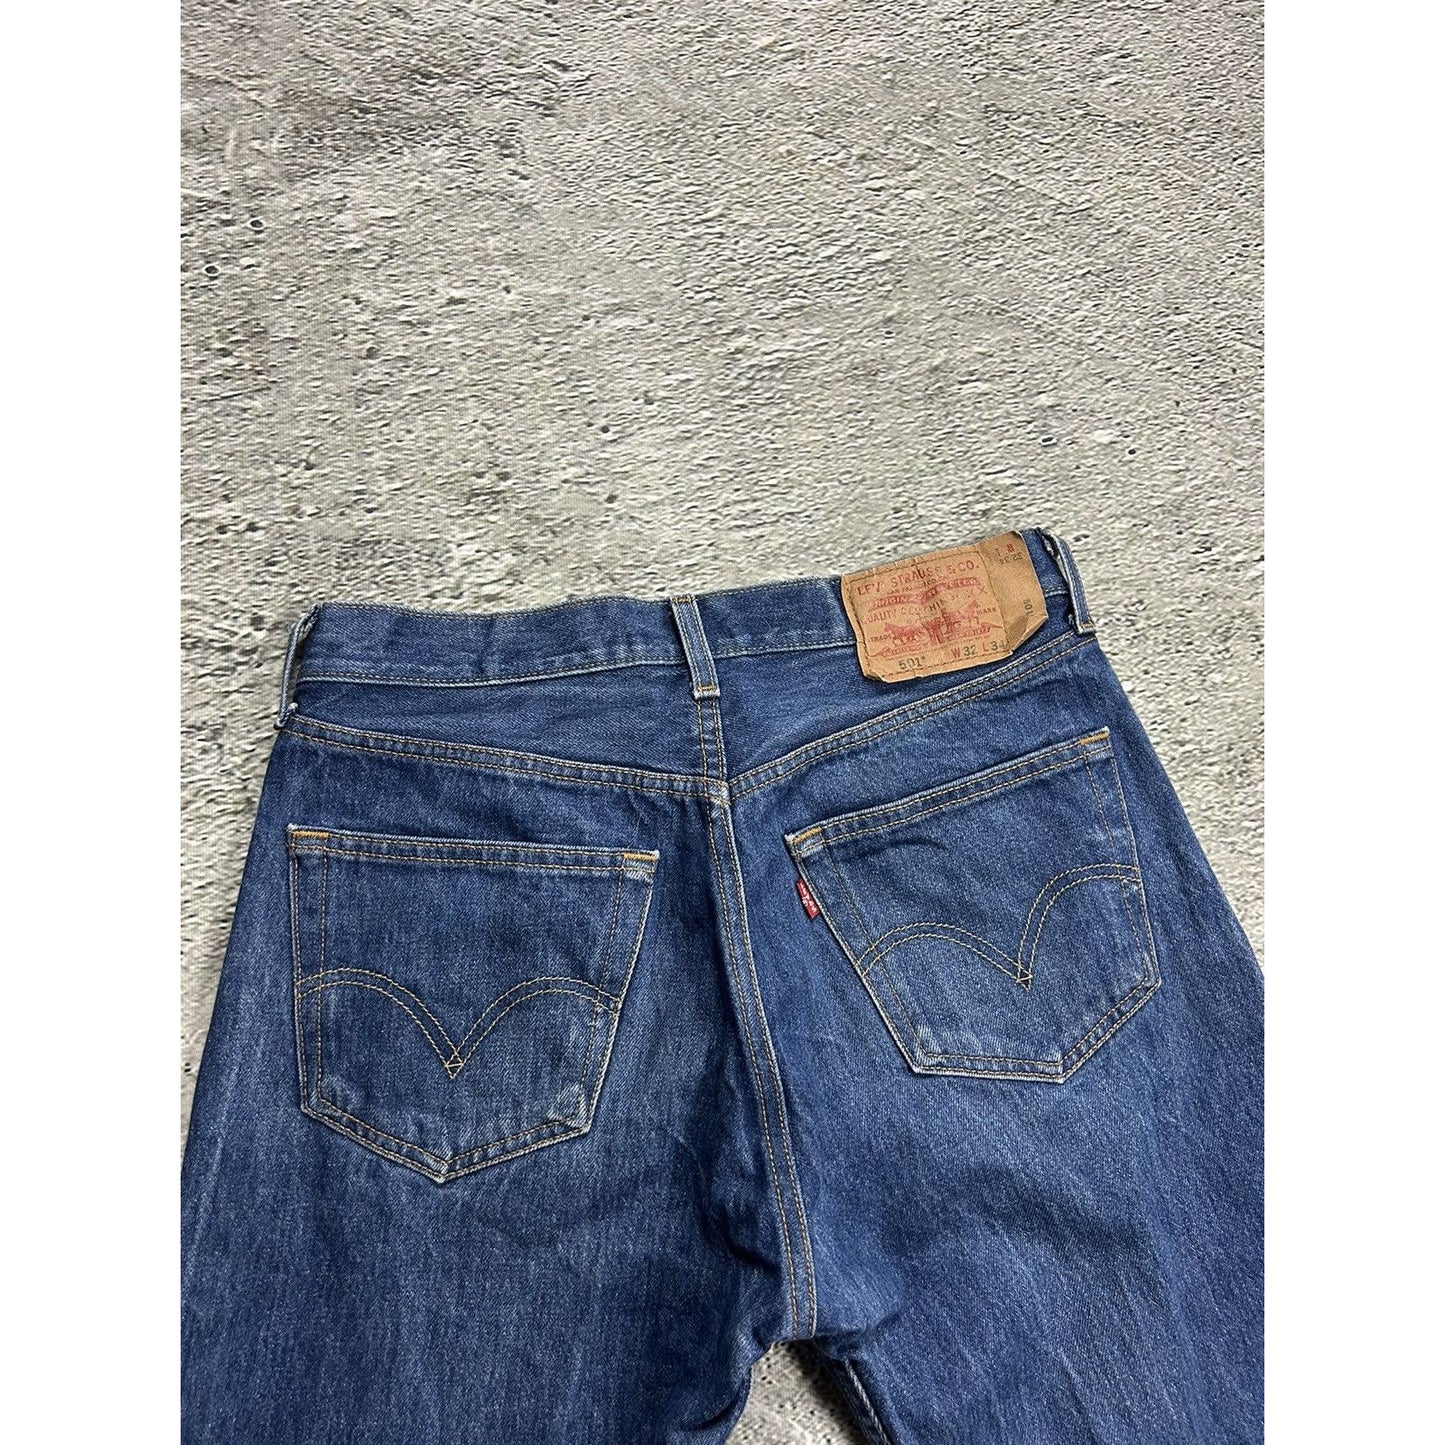 Levi’s 501 vintage navy jeans denim pants